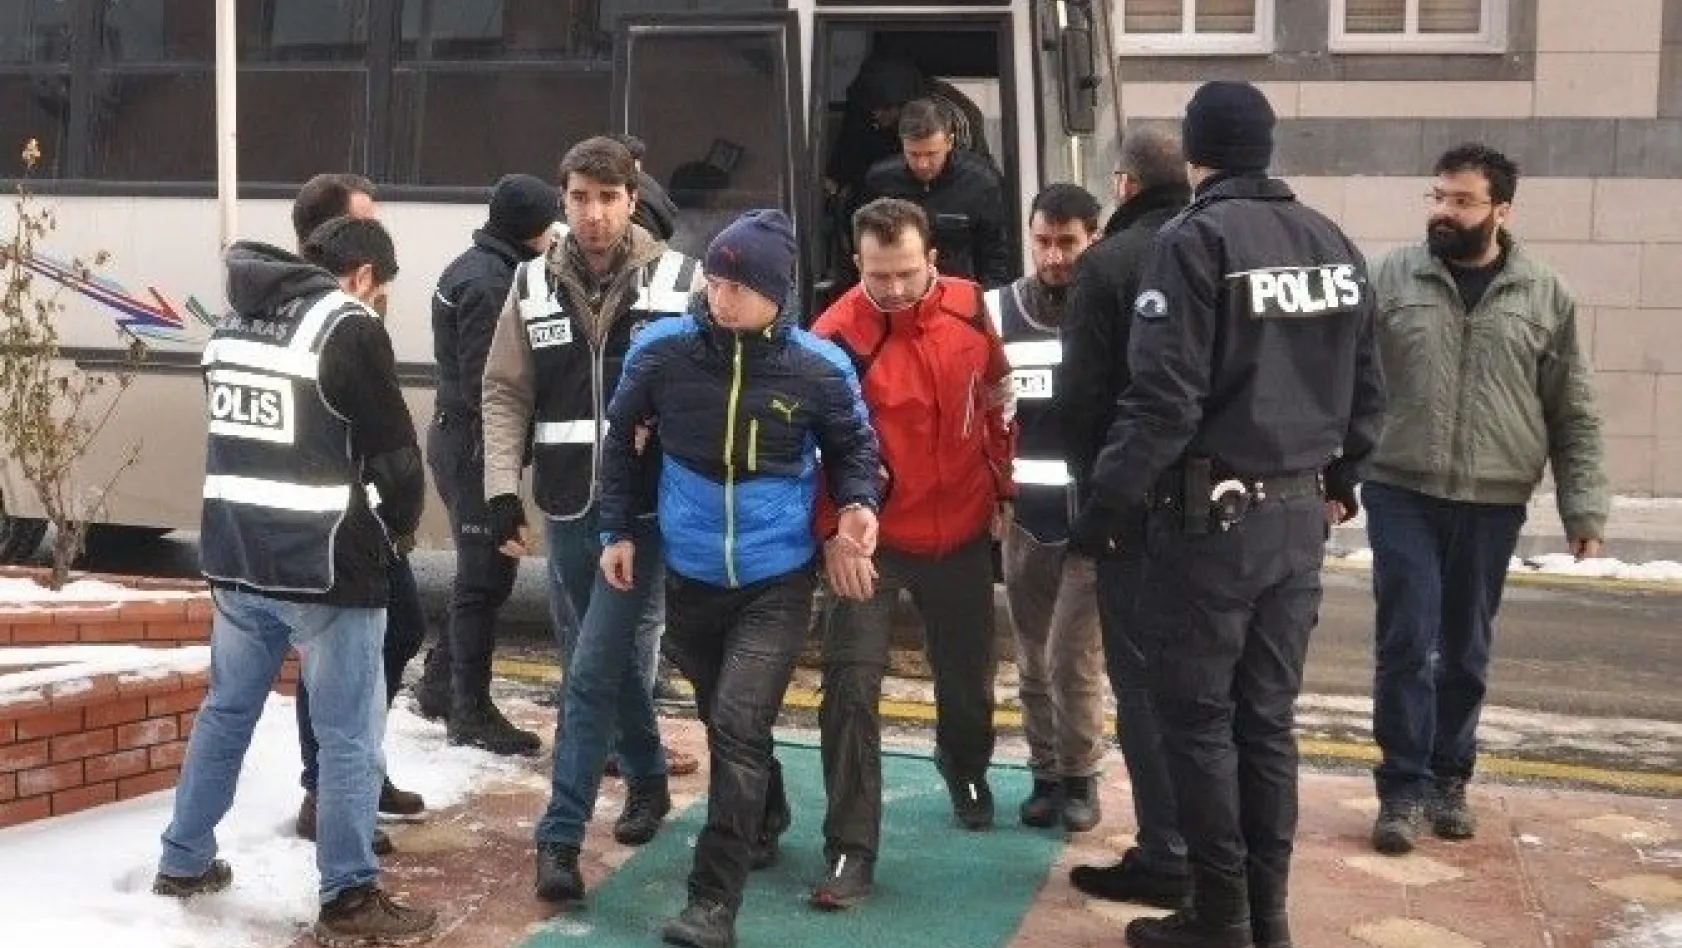 FETÖ'nün askeri okul yapılanması soruşturmasında 8 kişi tutuklandı
